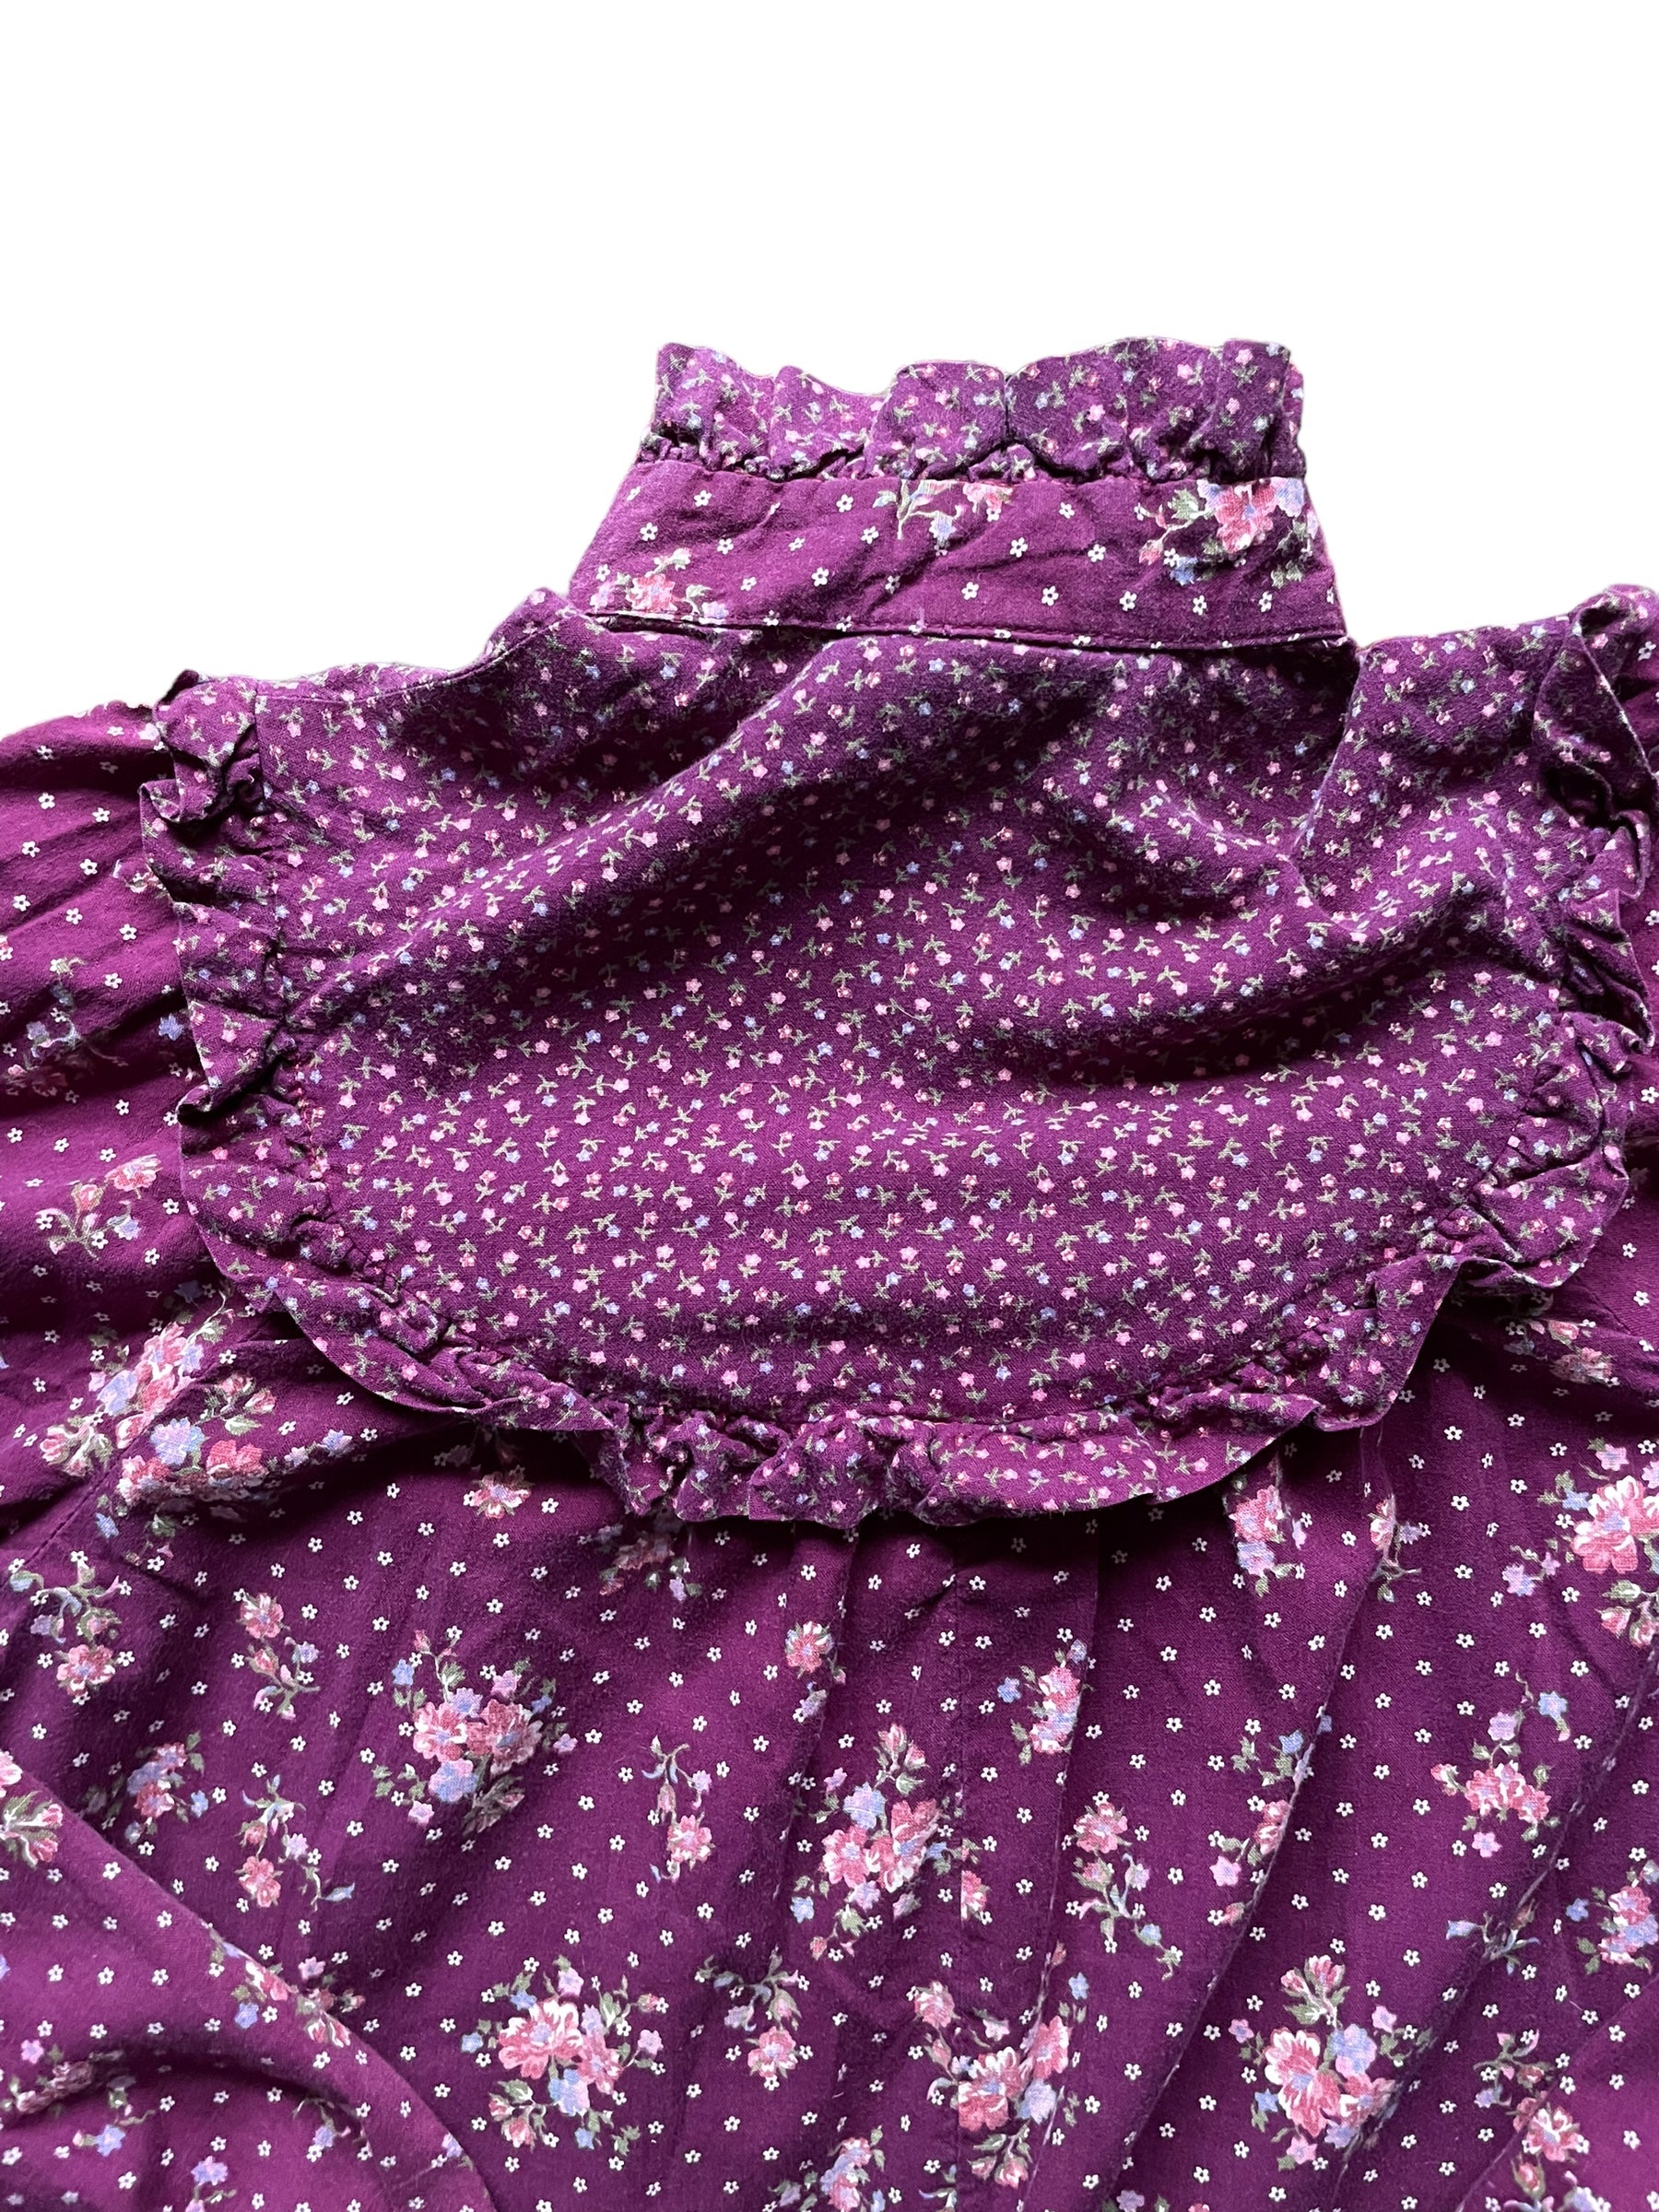 Back collar detail of Vintage 1970s Eber Purple Floral Prairie Top | Barn Owl Vintage Seattle | Seattle Ladies Vintage